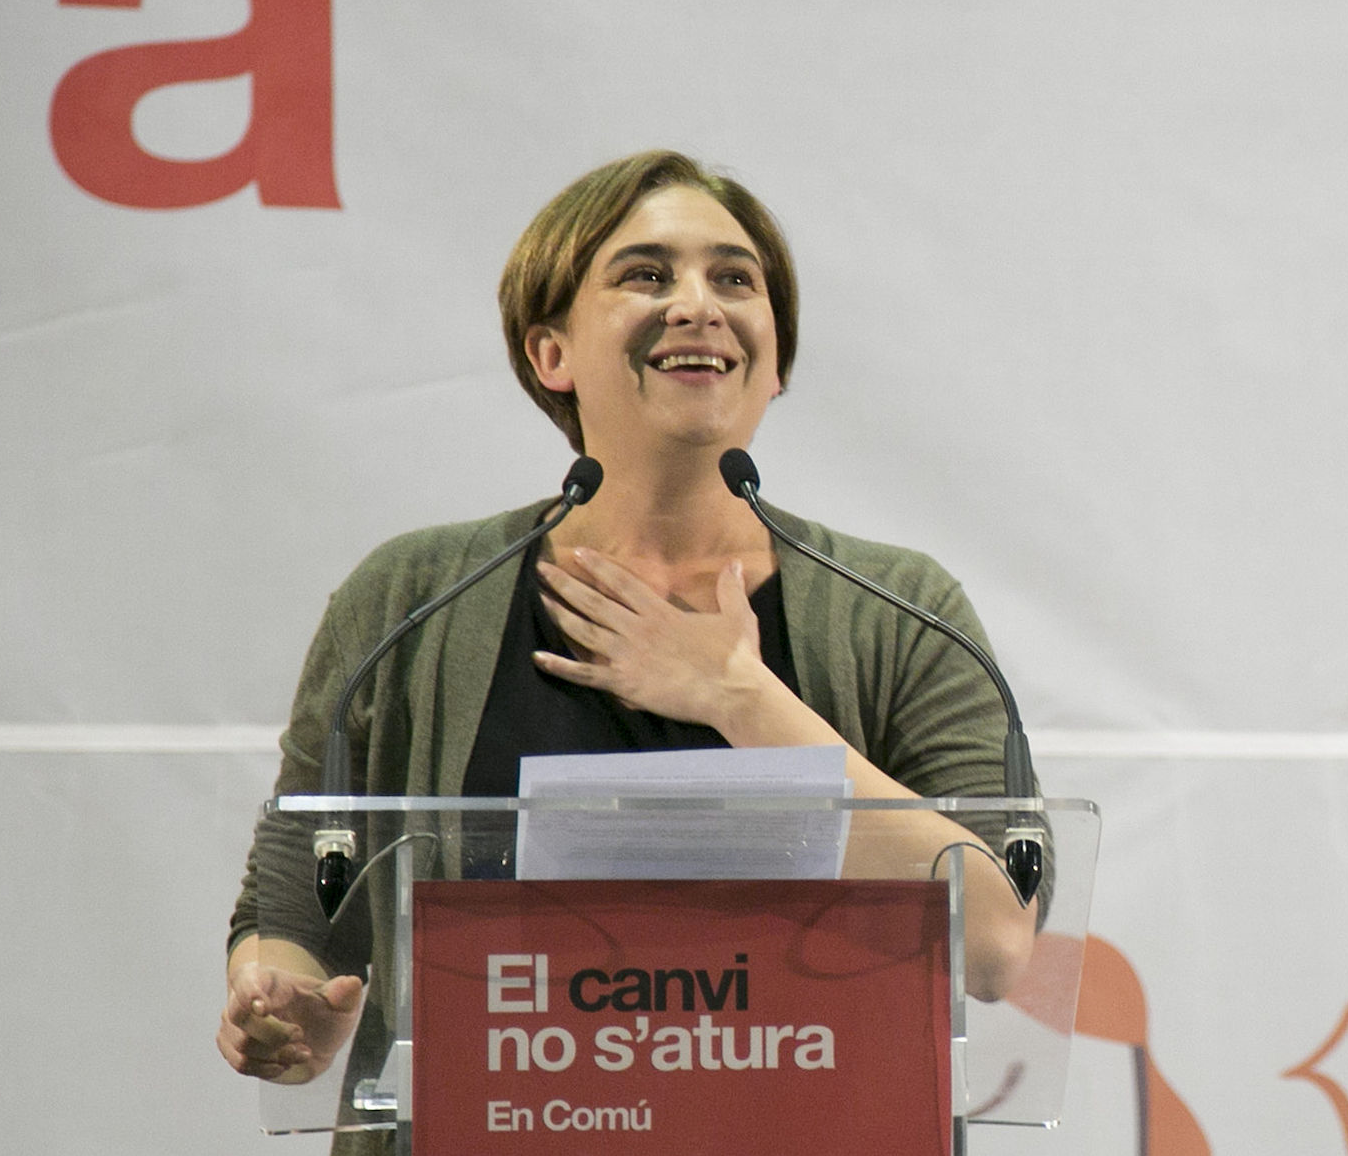 Colau interviene en la crisis con Podem: "La confluencia no peligra"